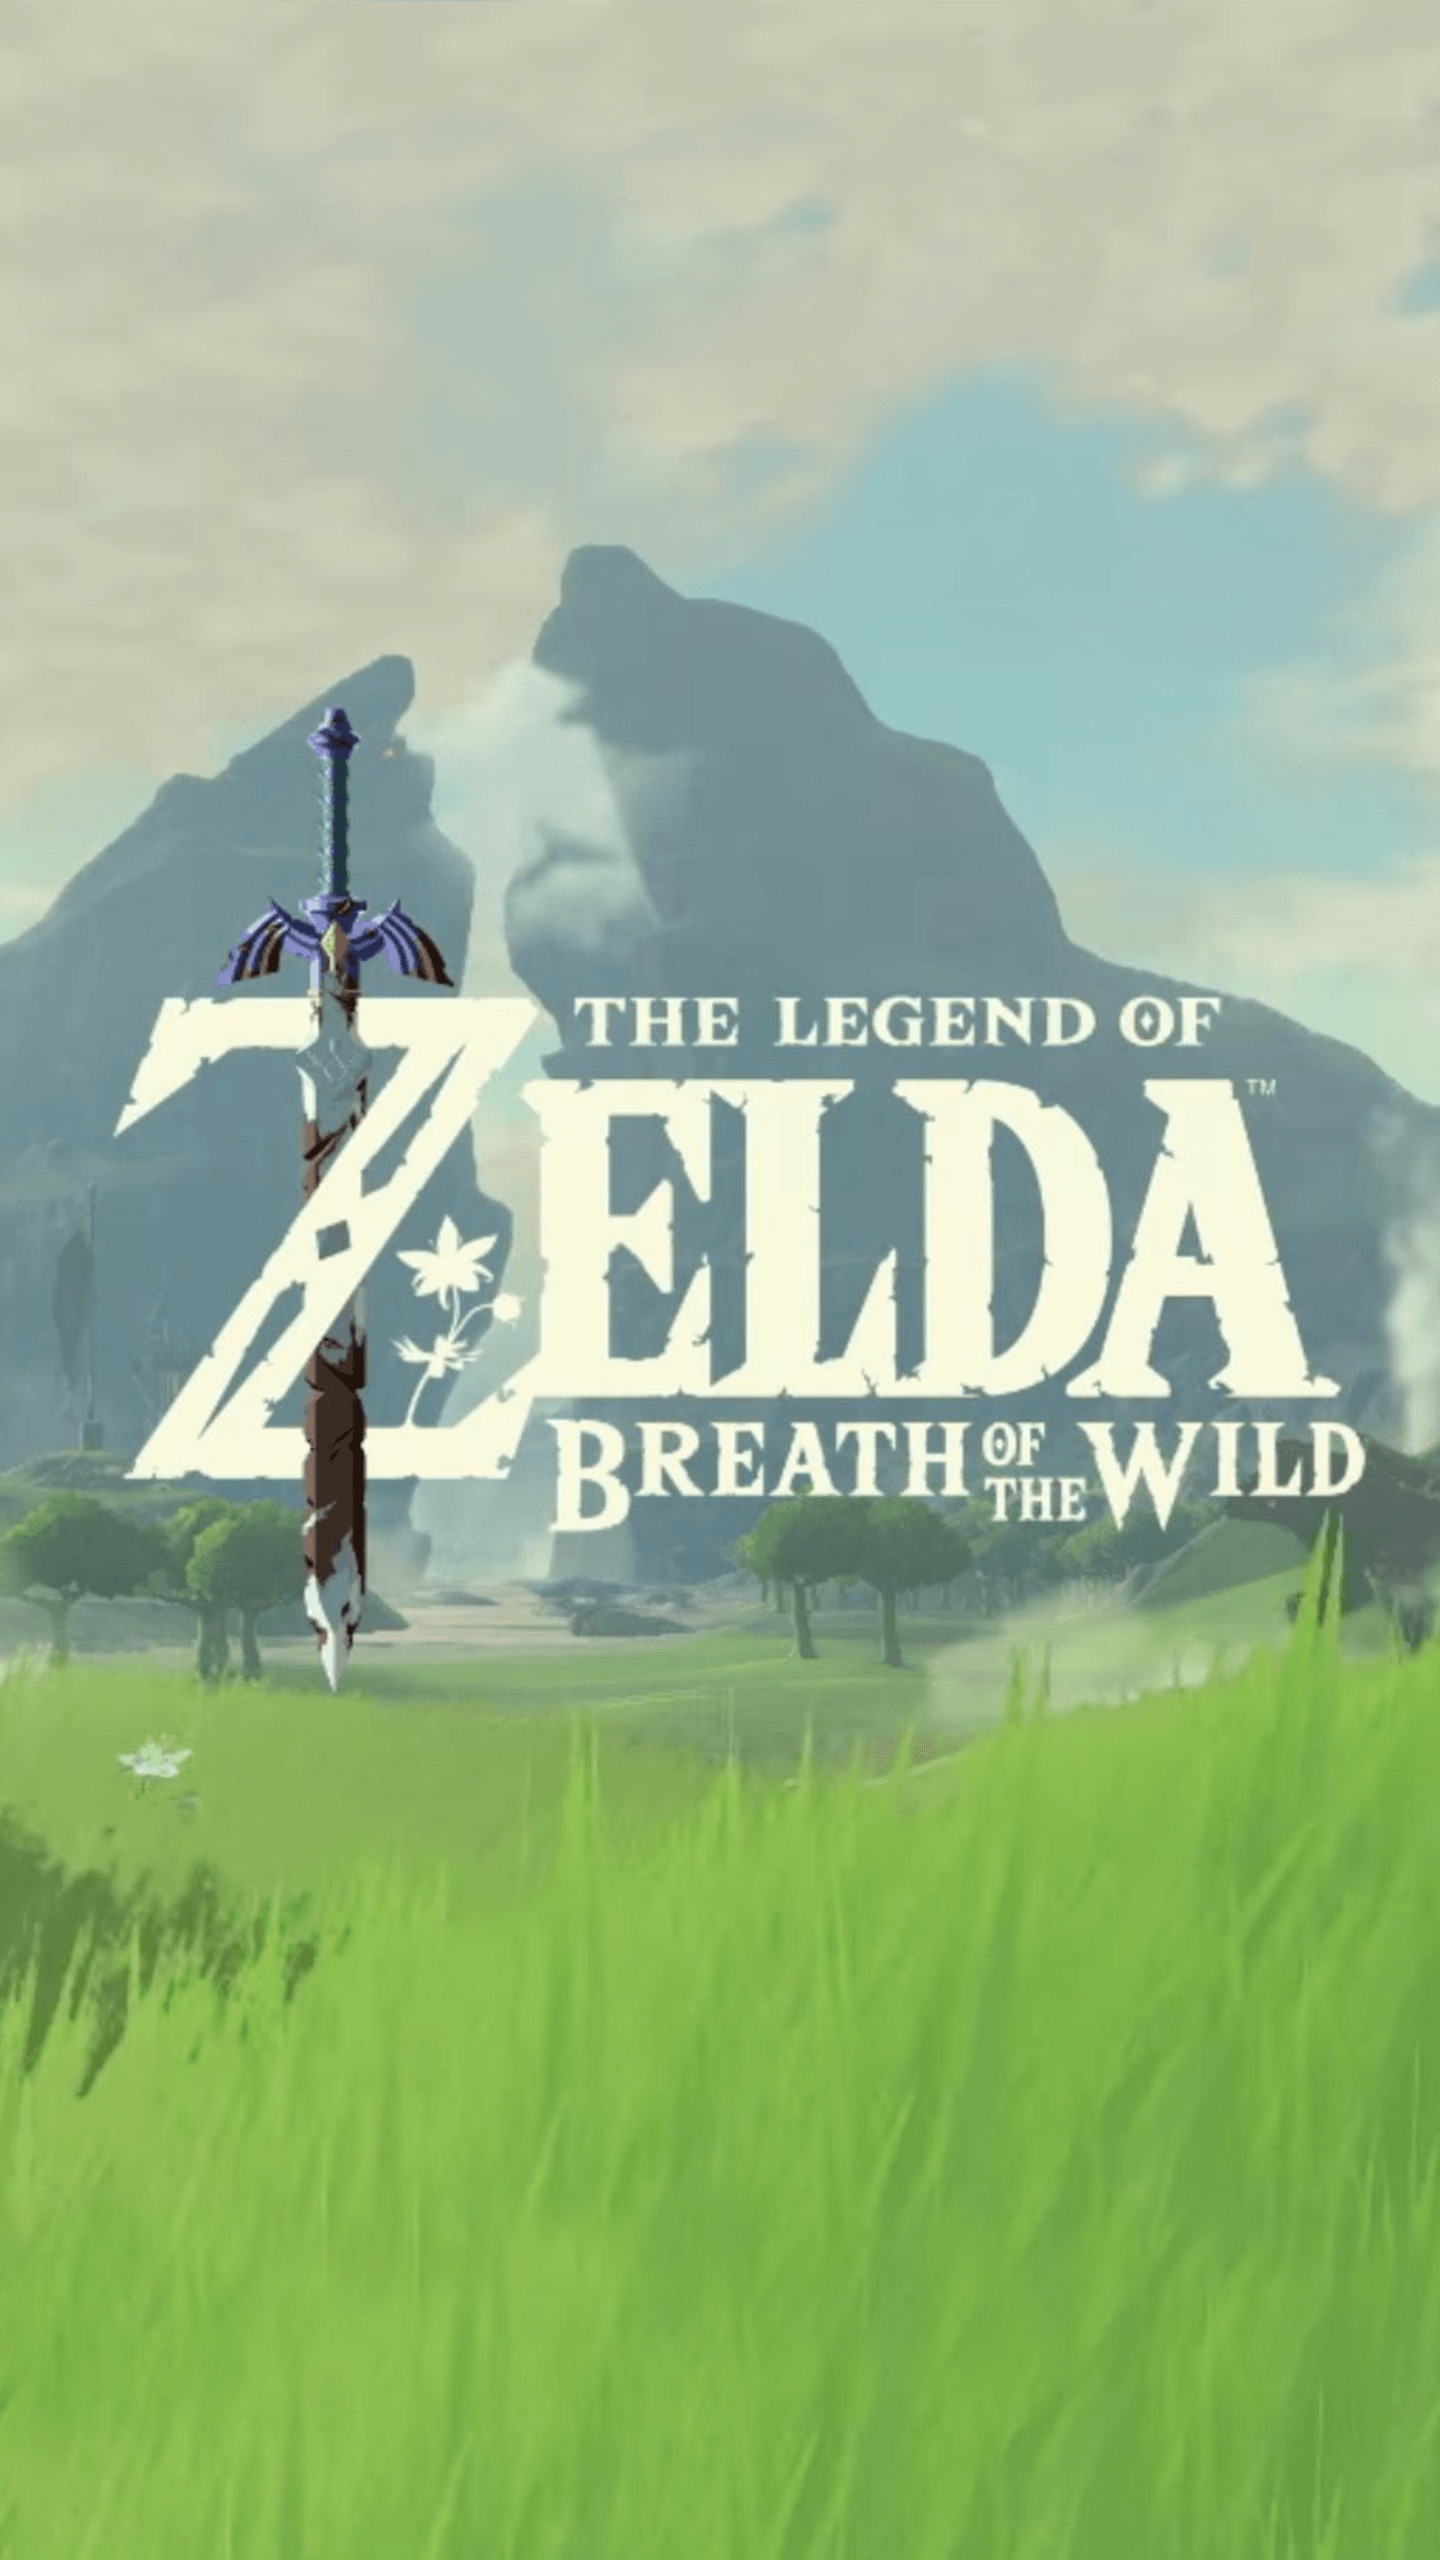 Zelda breath of the wild. mobile wallpaper. Legend of zelda, Breath of the wild, Zelda breath